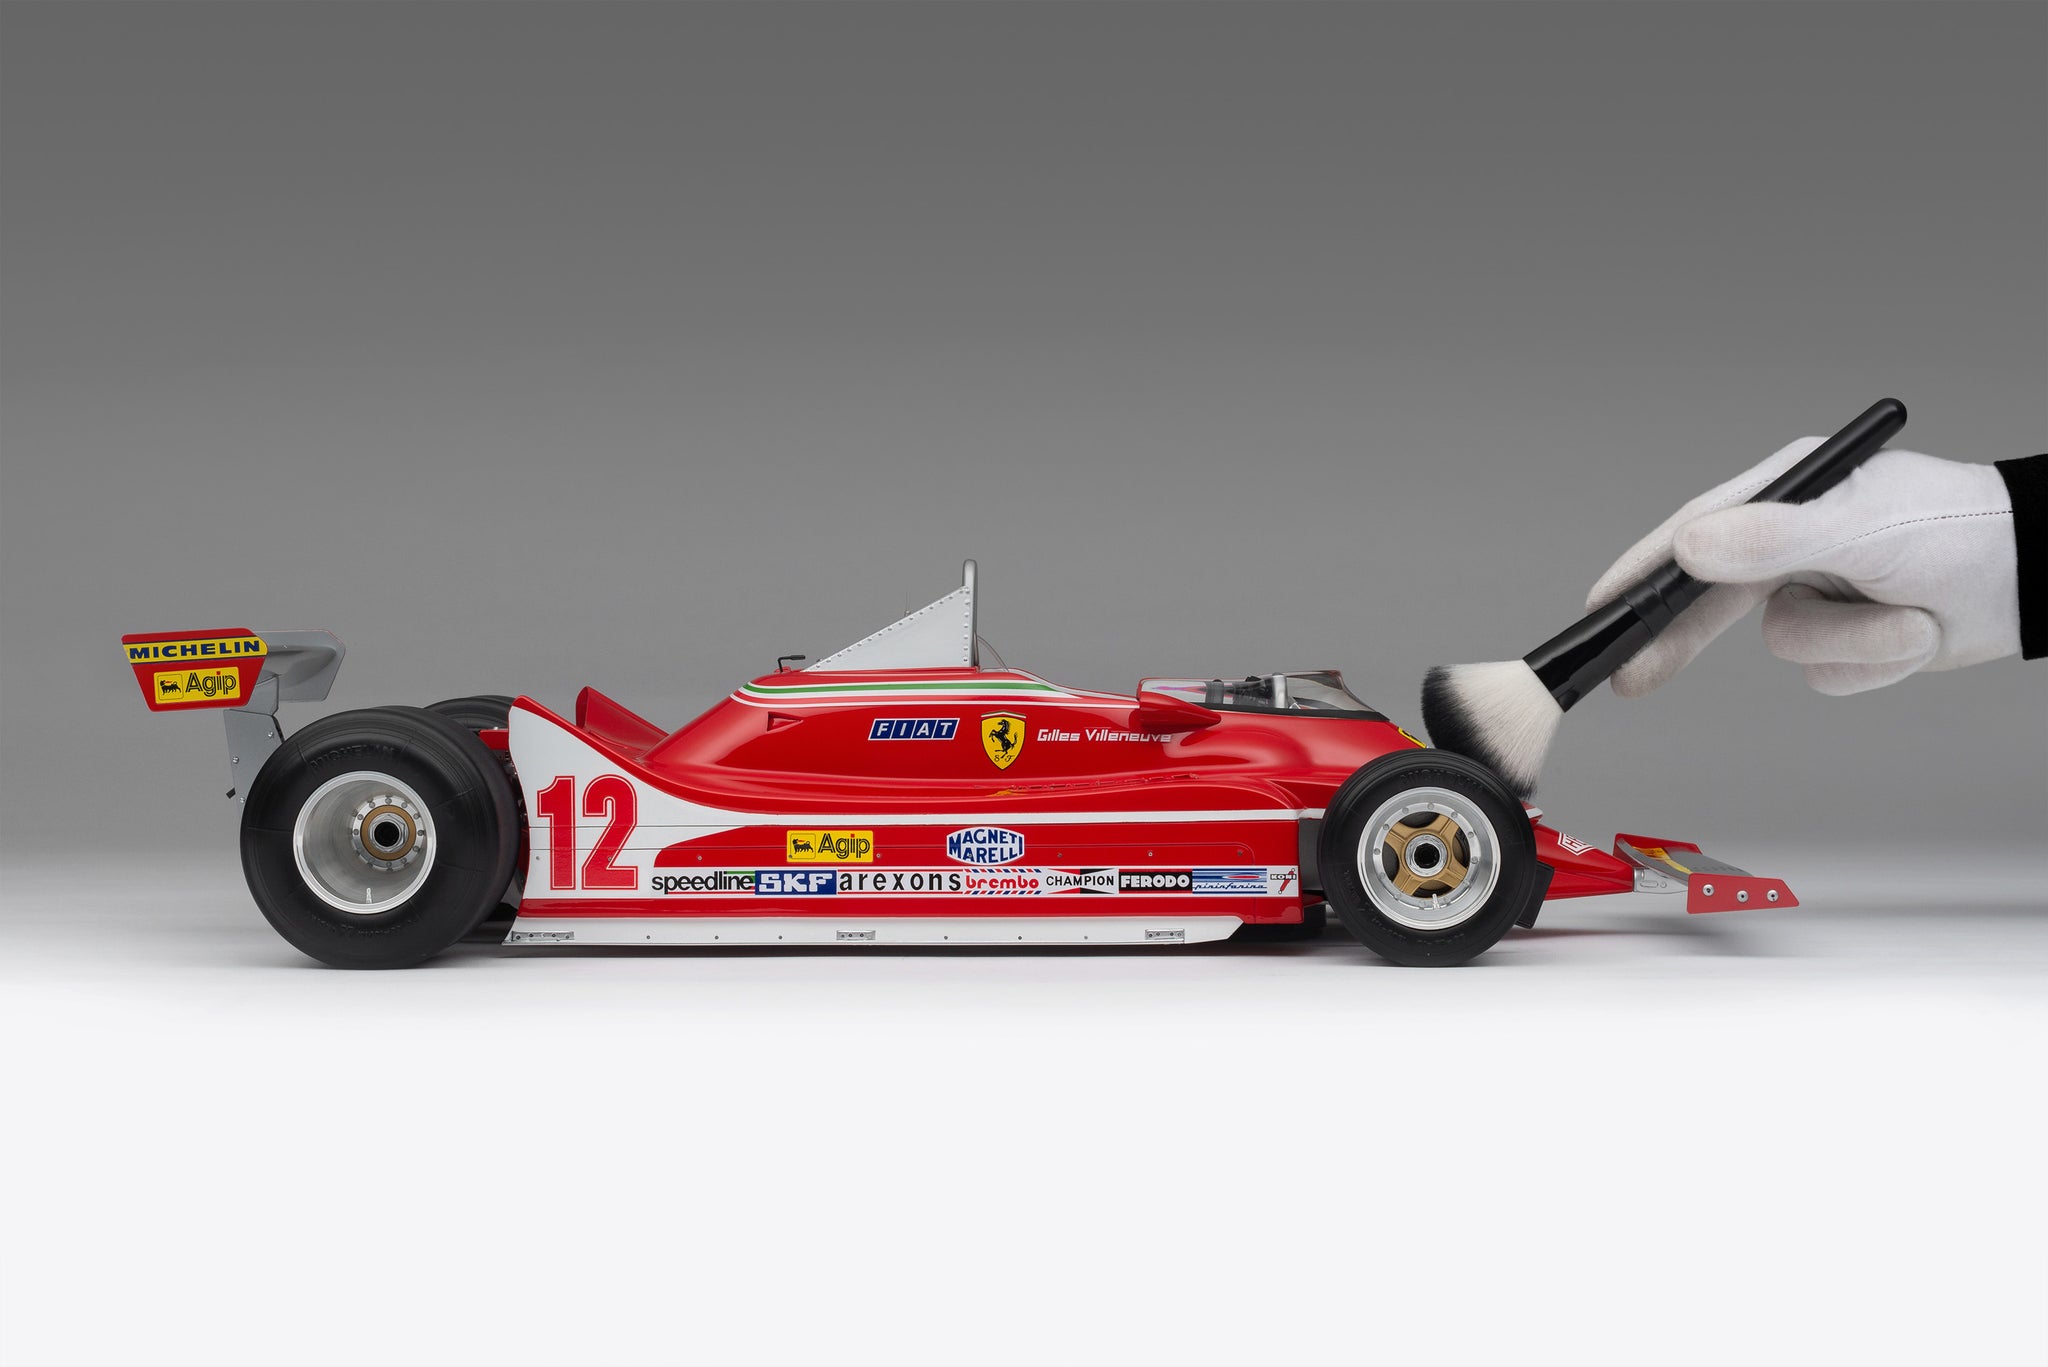 Ferrari 312 T4 at 1:8 scale